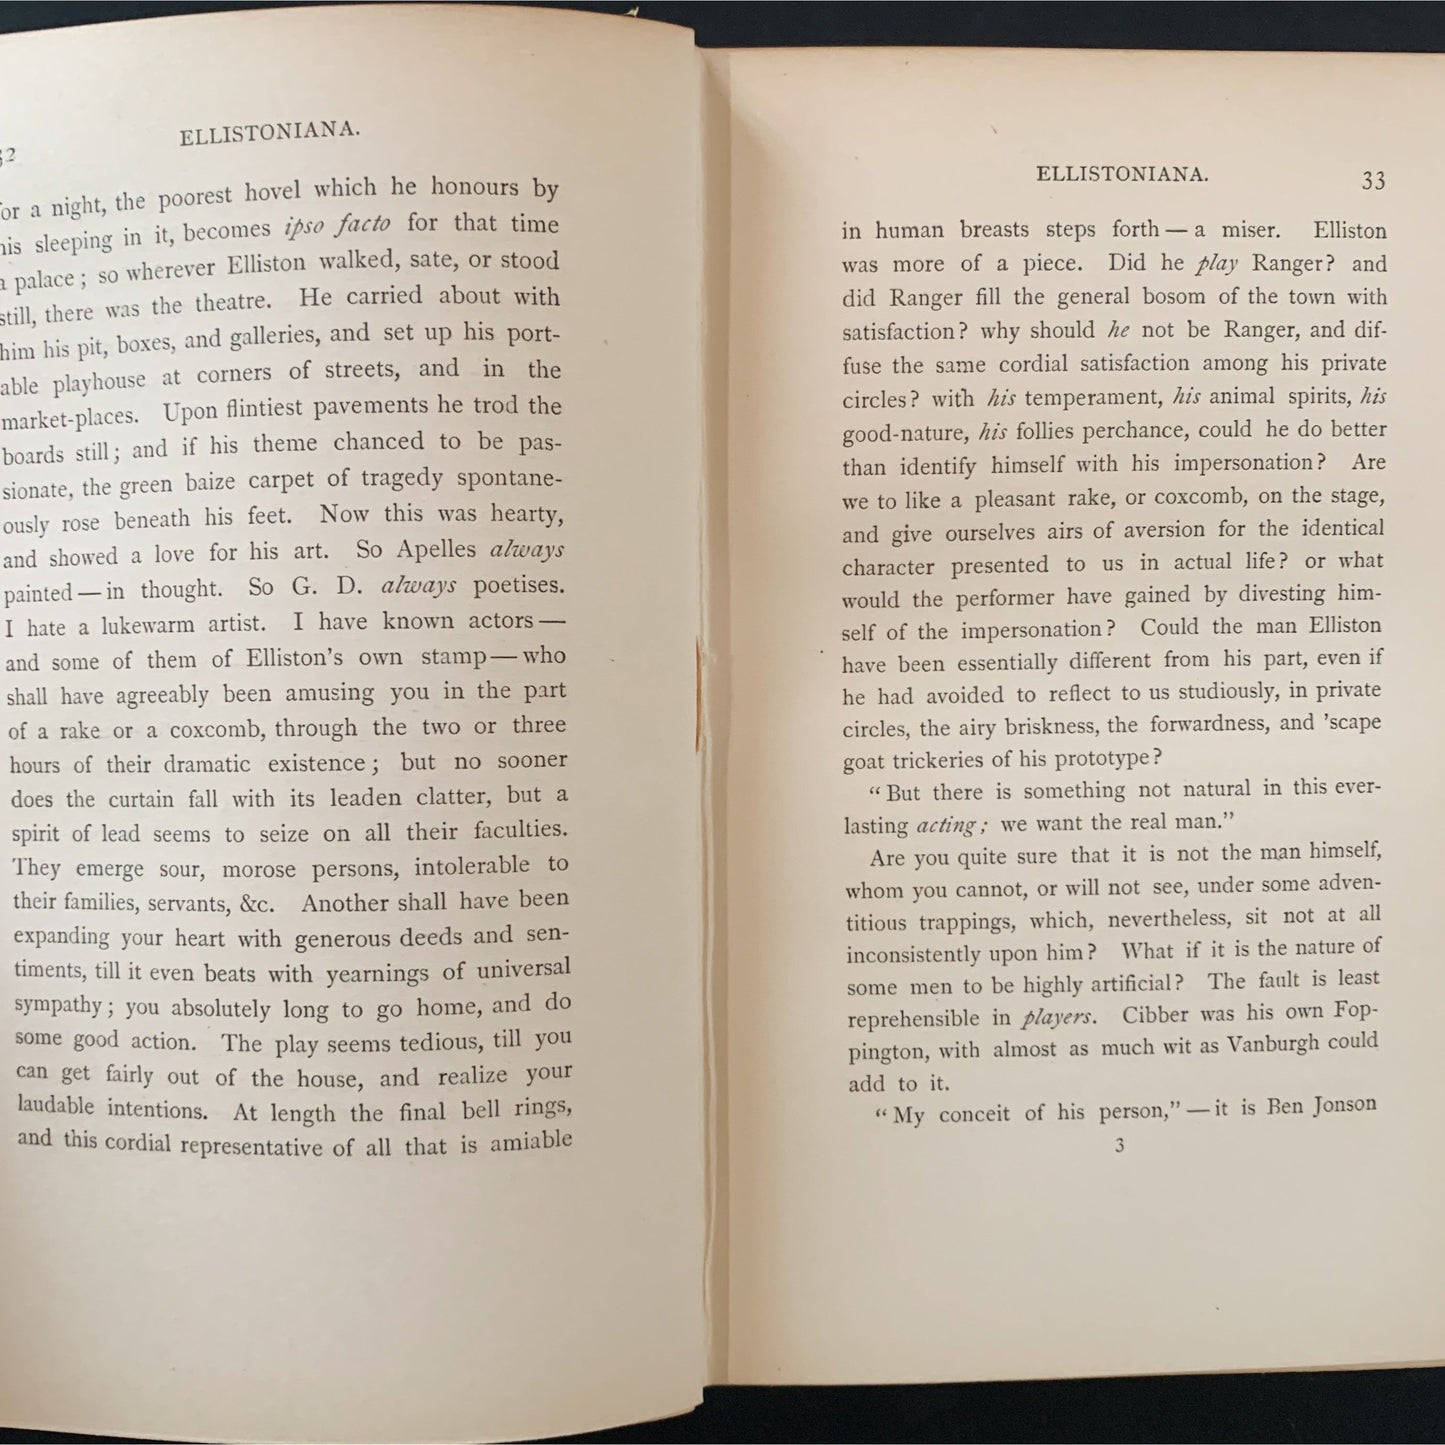 The Last Essays of Elia, Charles Lamb, 1892